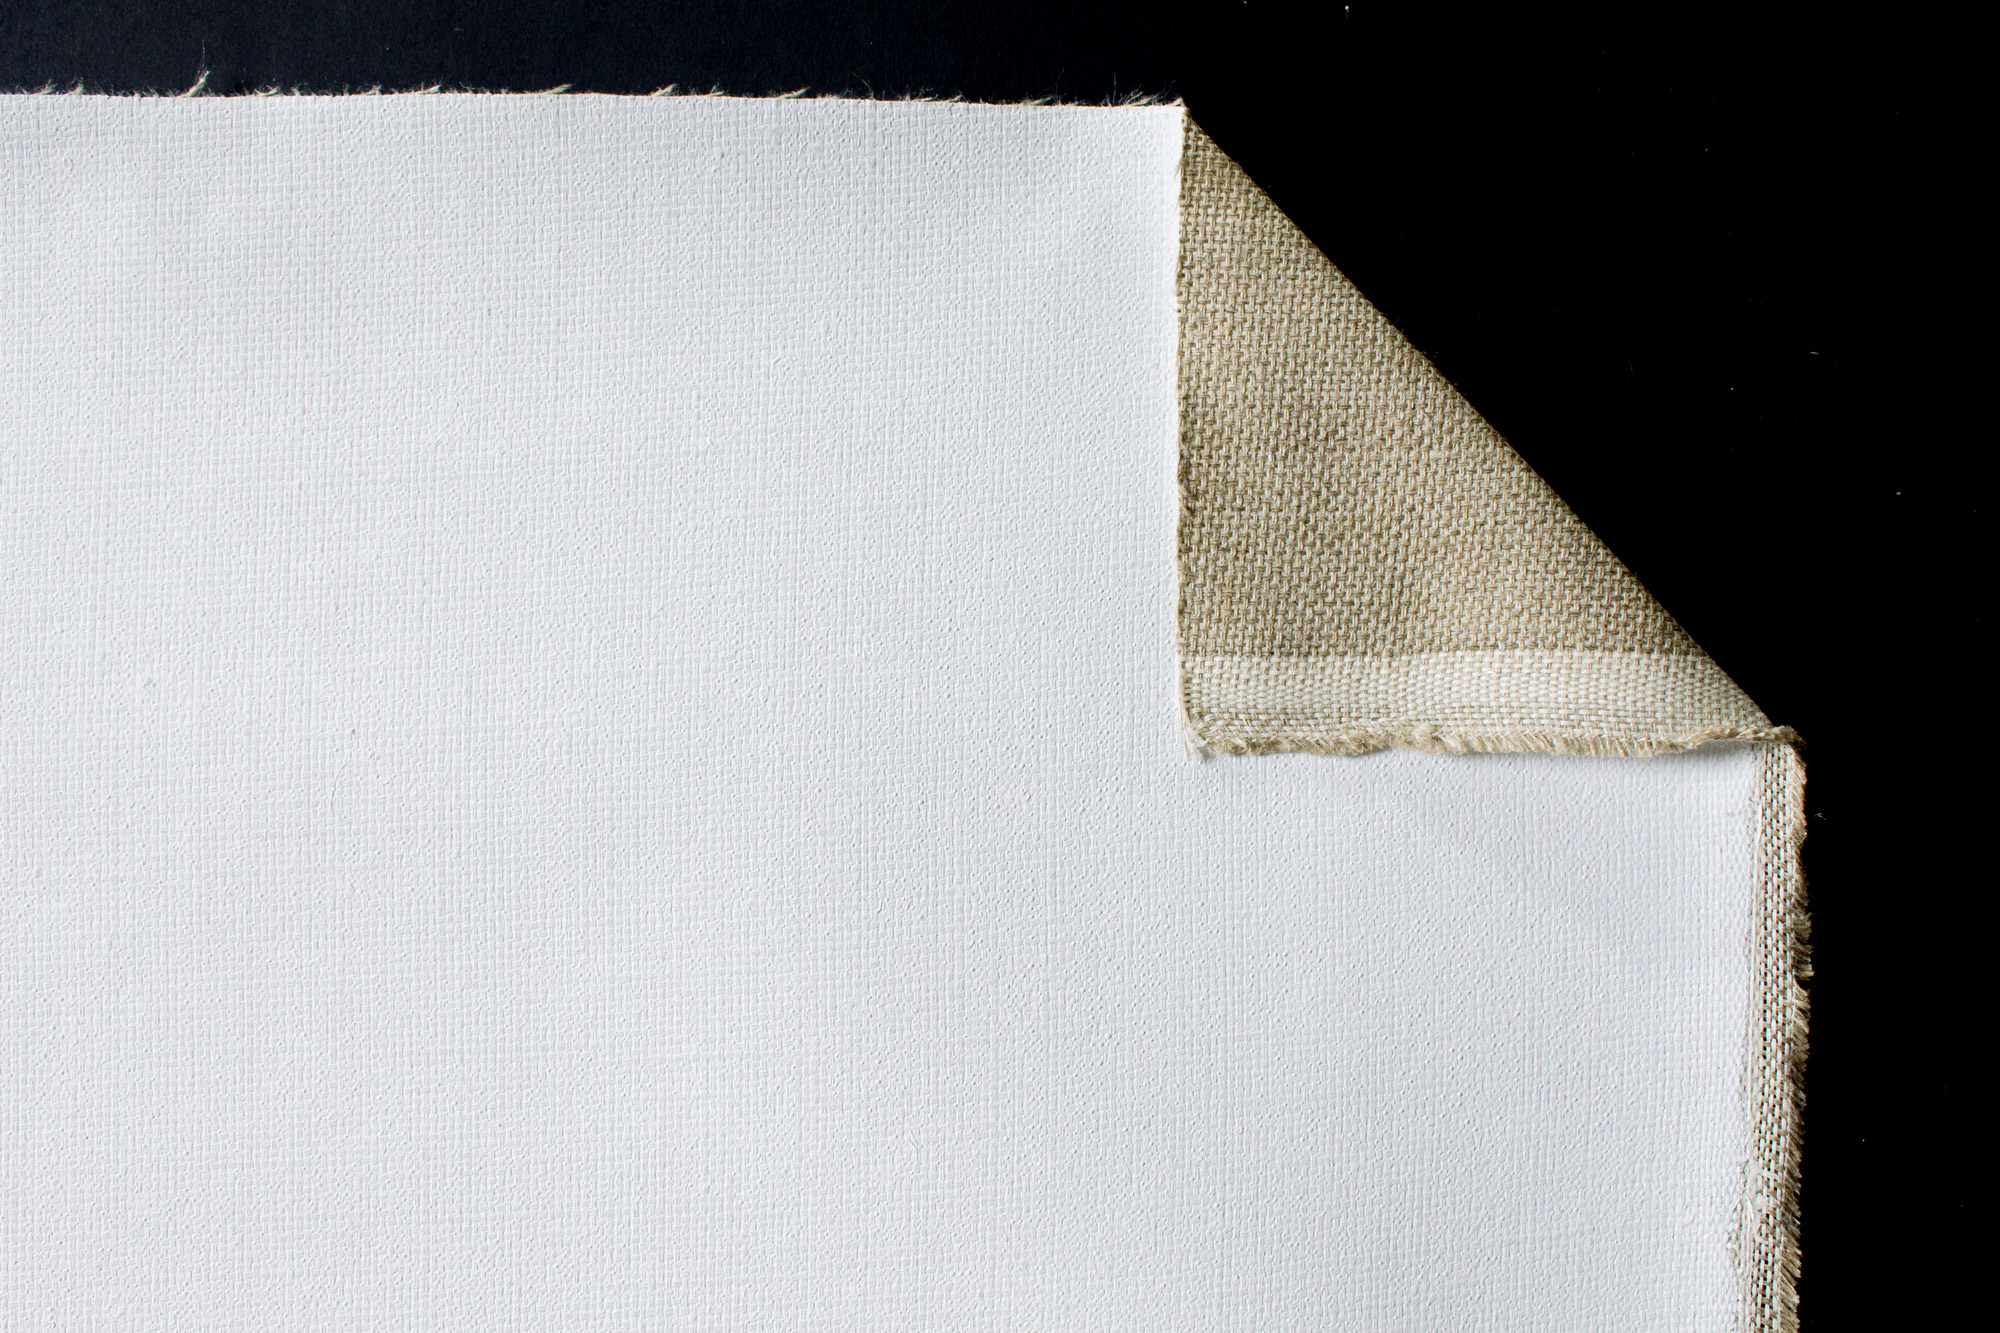 Caravaggio primed Linen 410 g/m² white, 2.10 m width, extra coarse, No. 64